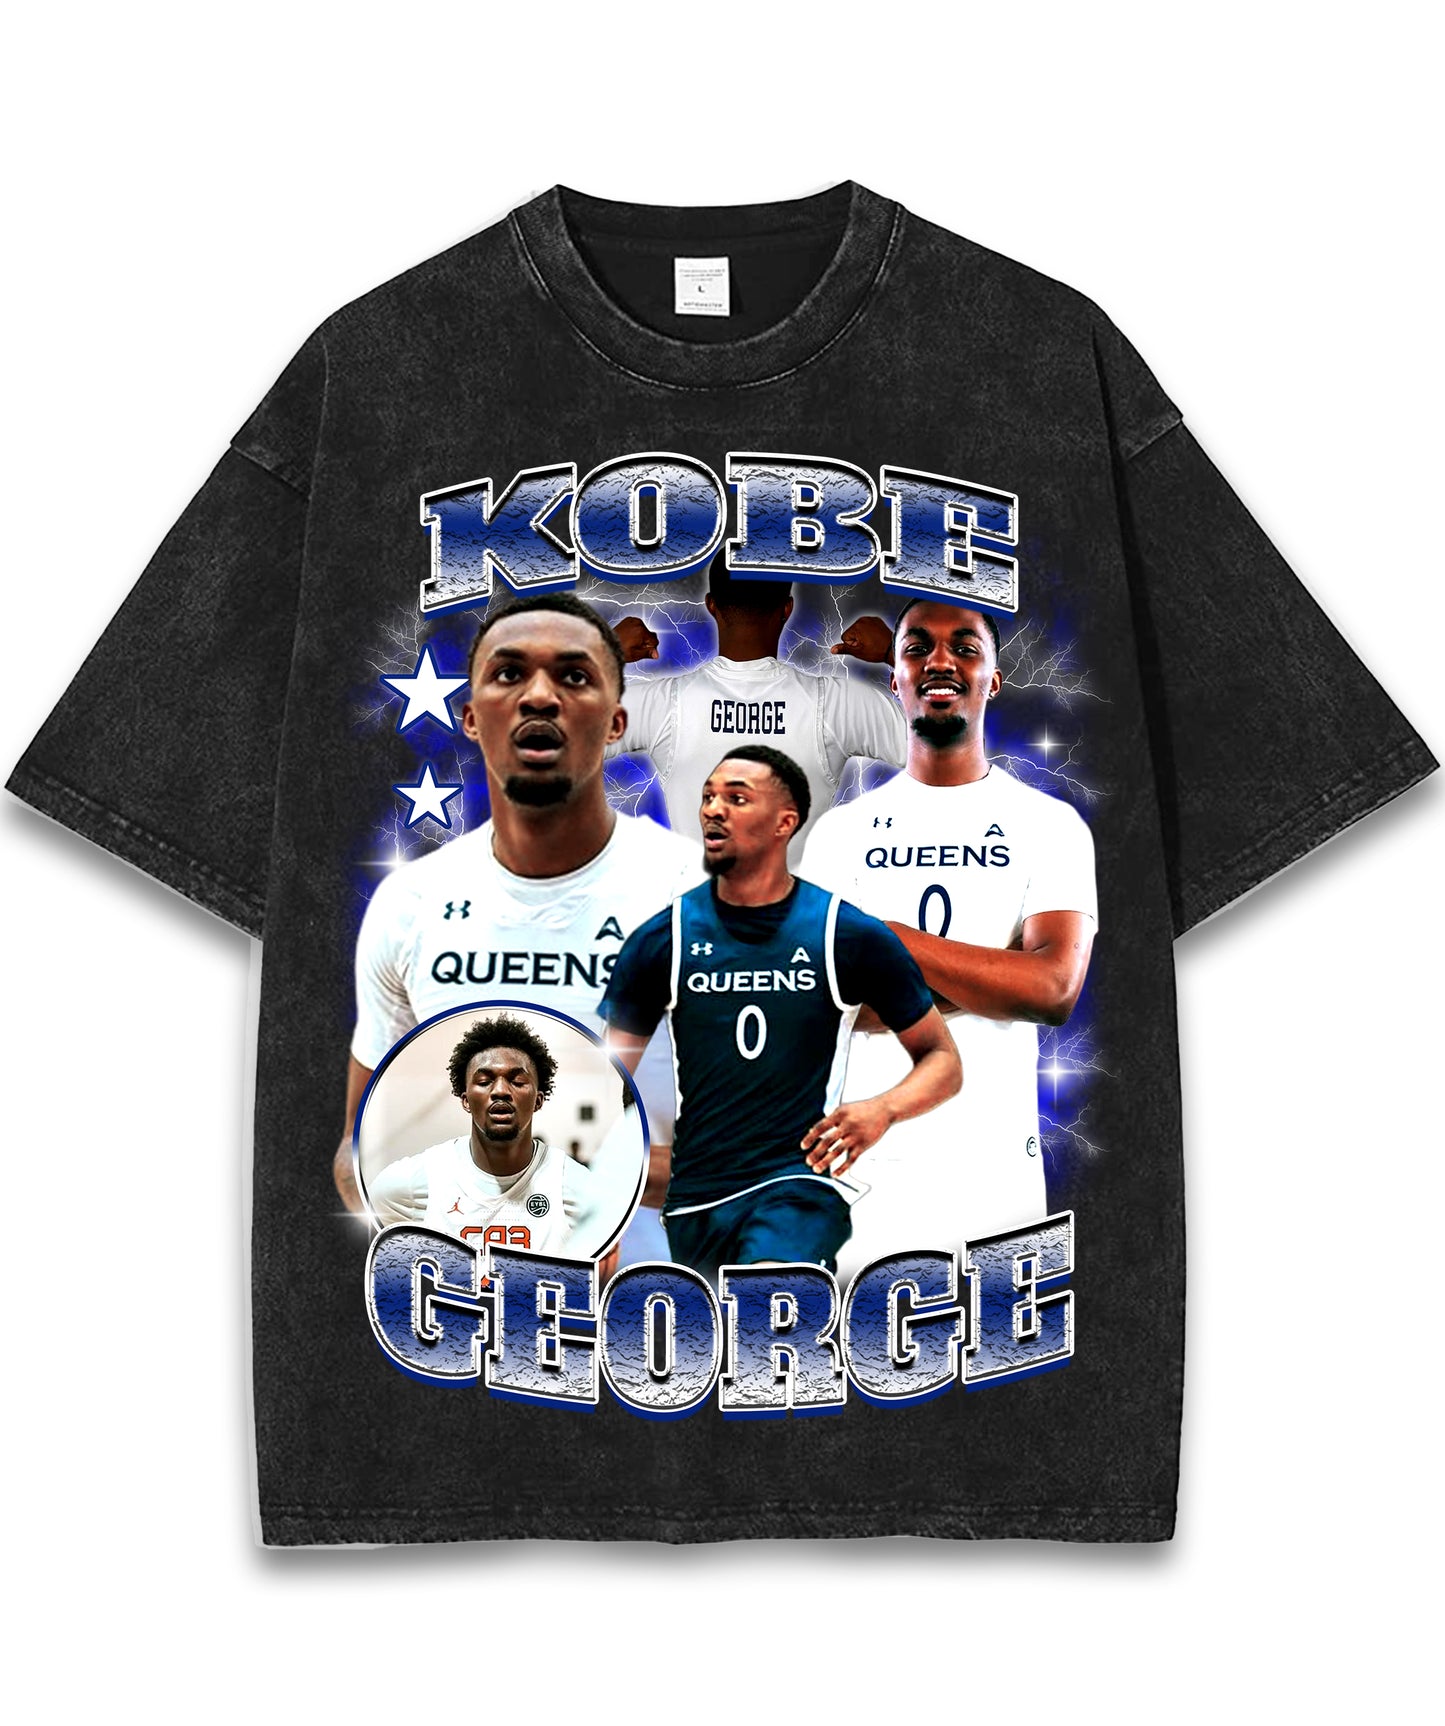 Kobe George Graphic T-shirt